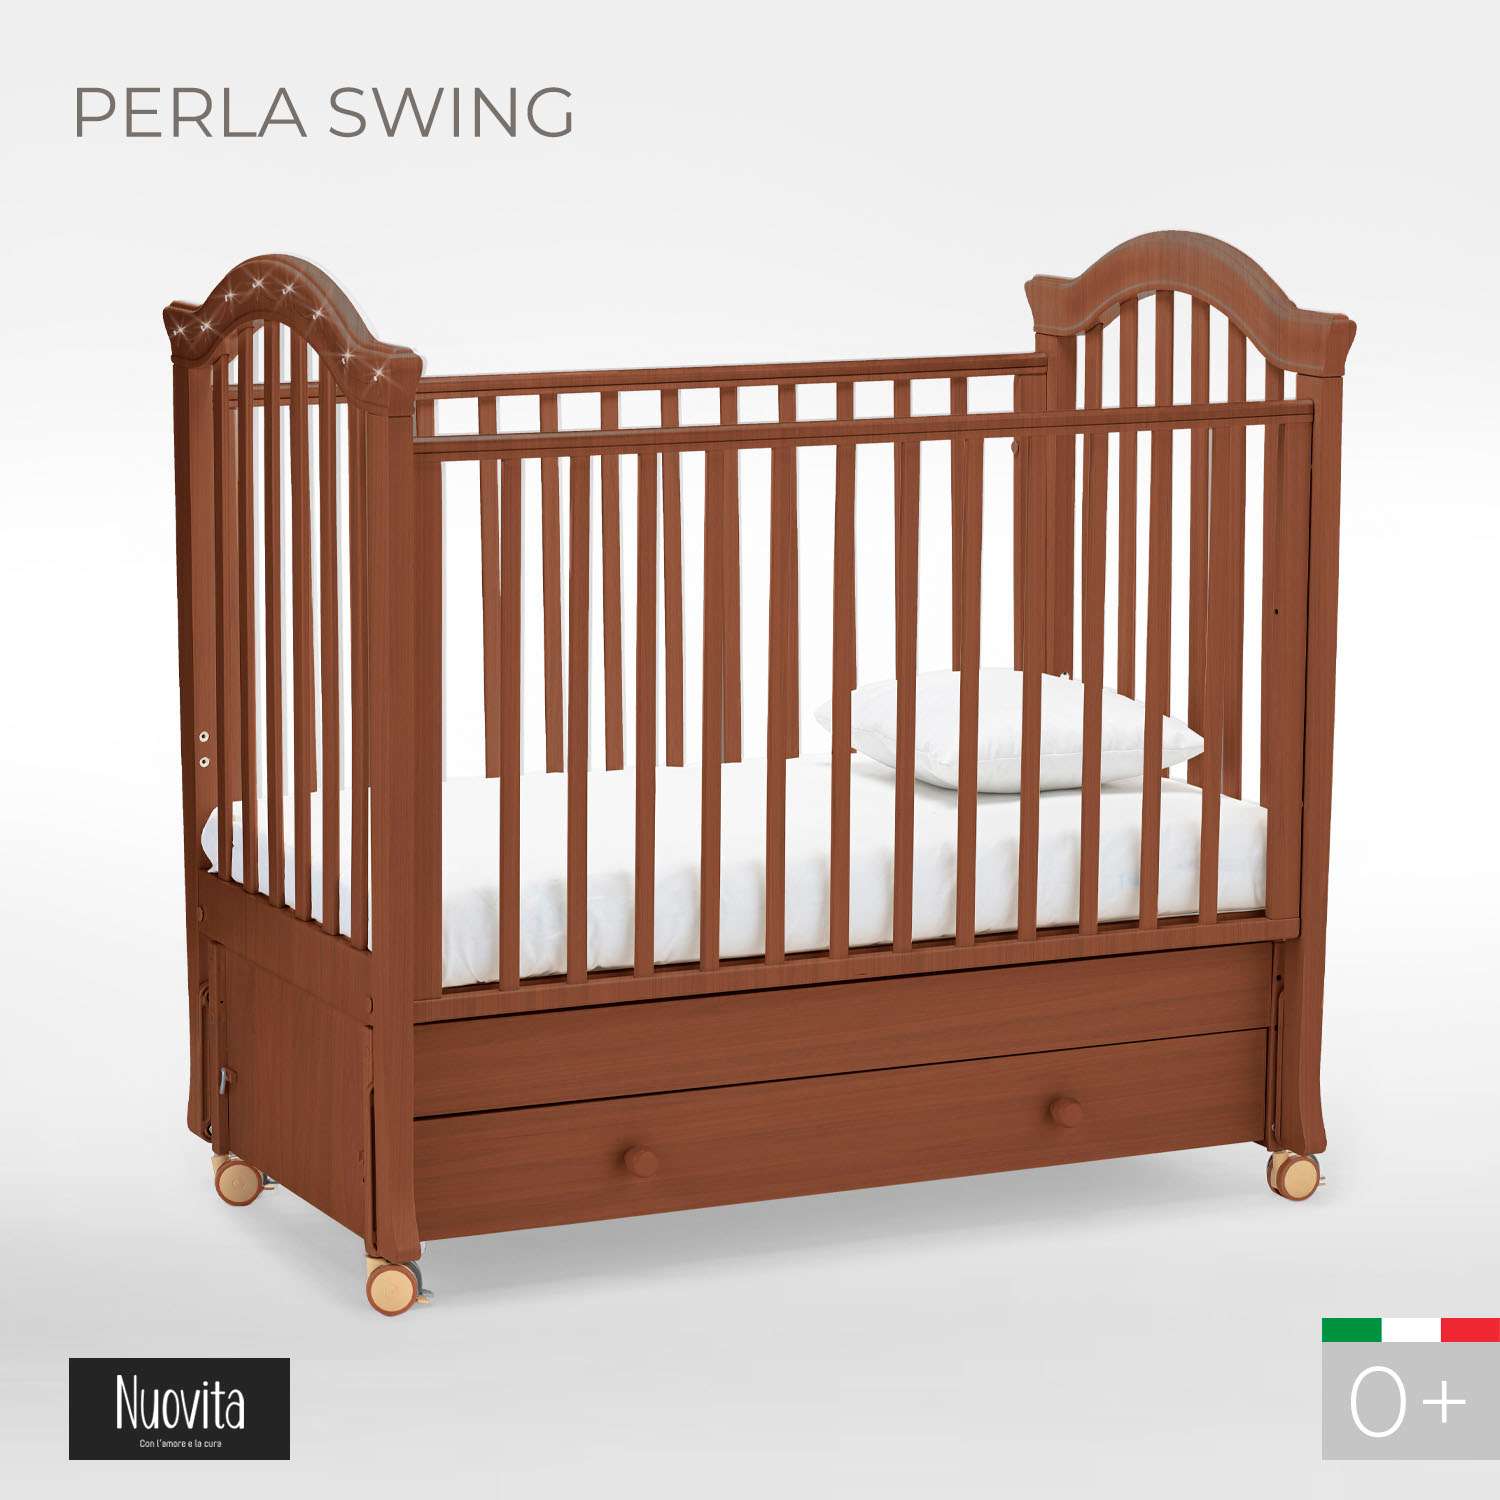 Детская кроватка Nuovita Perla Swing прямоугольная, продольный маятник (темный орех) - фото 2